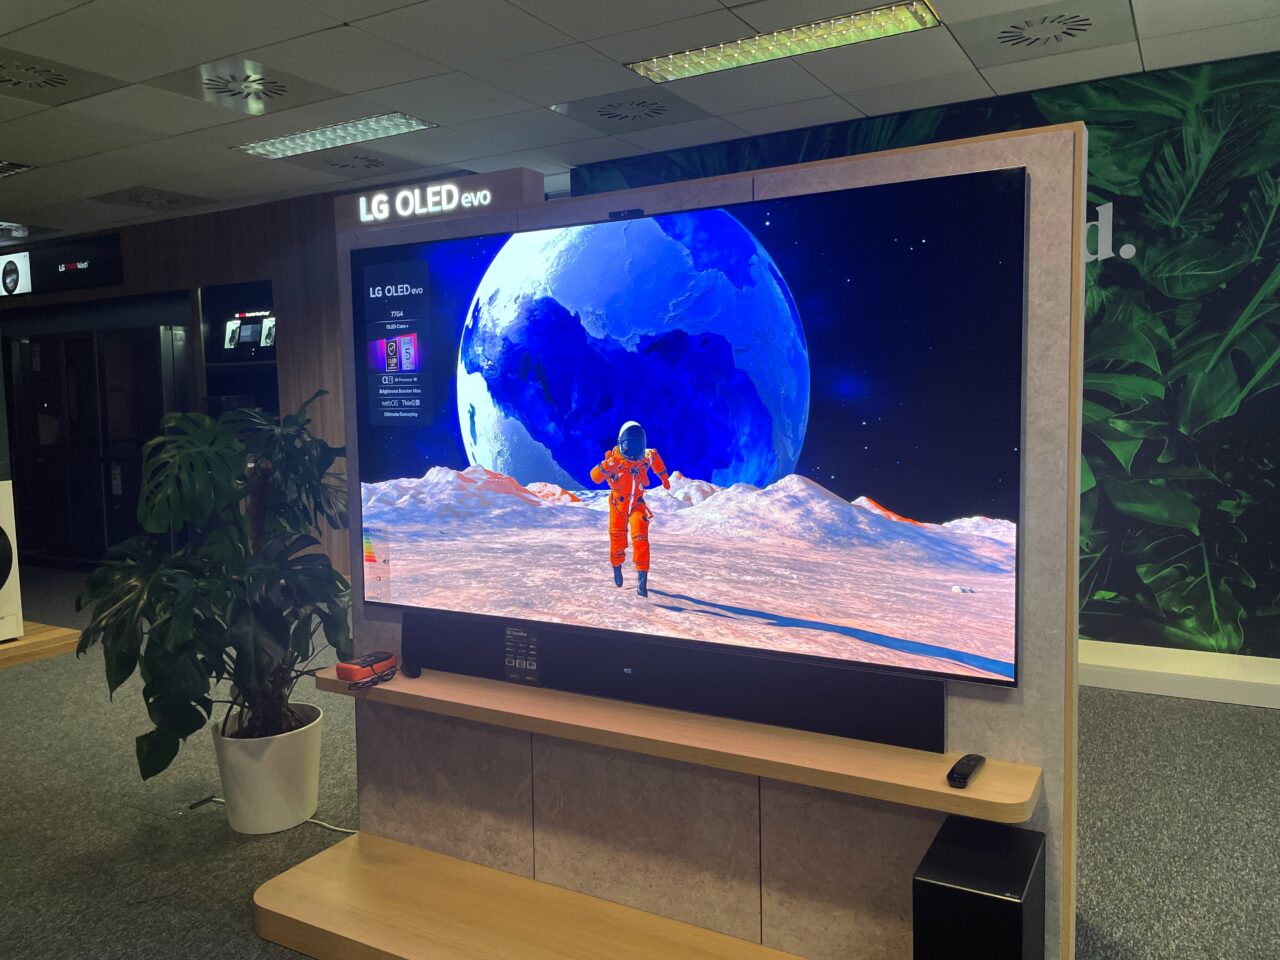 Telewizor LG OLED Evo wyświetlający obraz astronauty na tle wielkiego księżyca i pejzażu kosmicznego, ustawiony w nowoczesnym pomieszczeniu z roślinami.